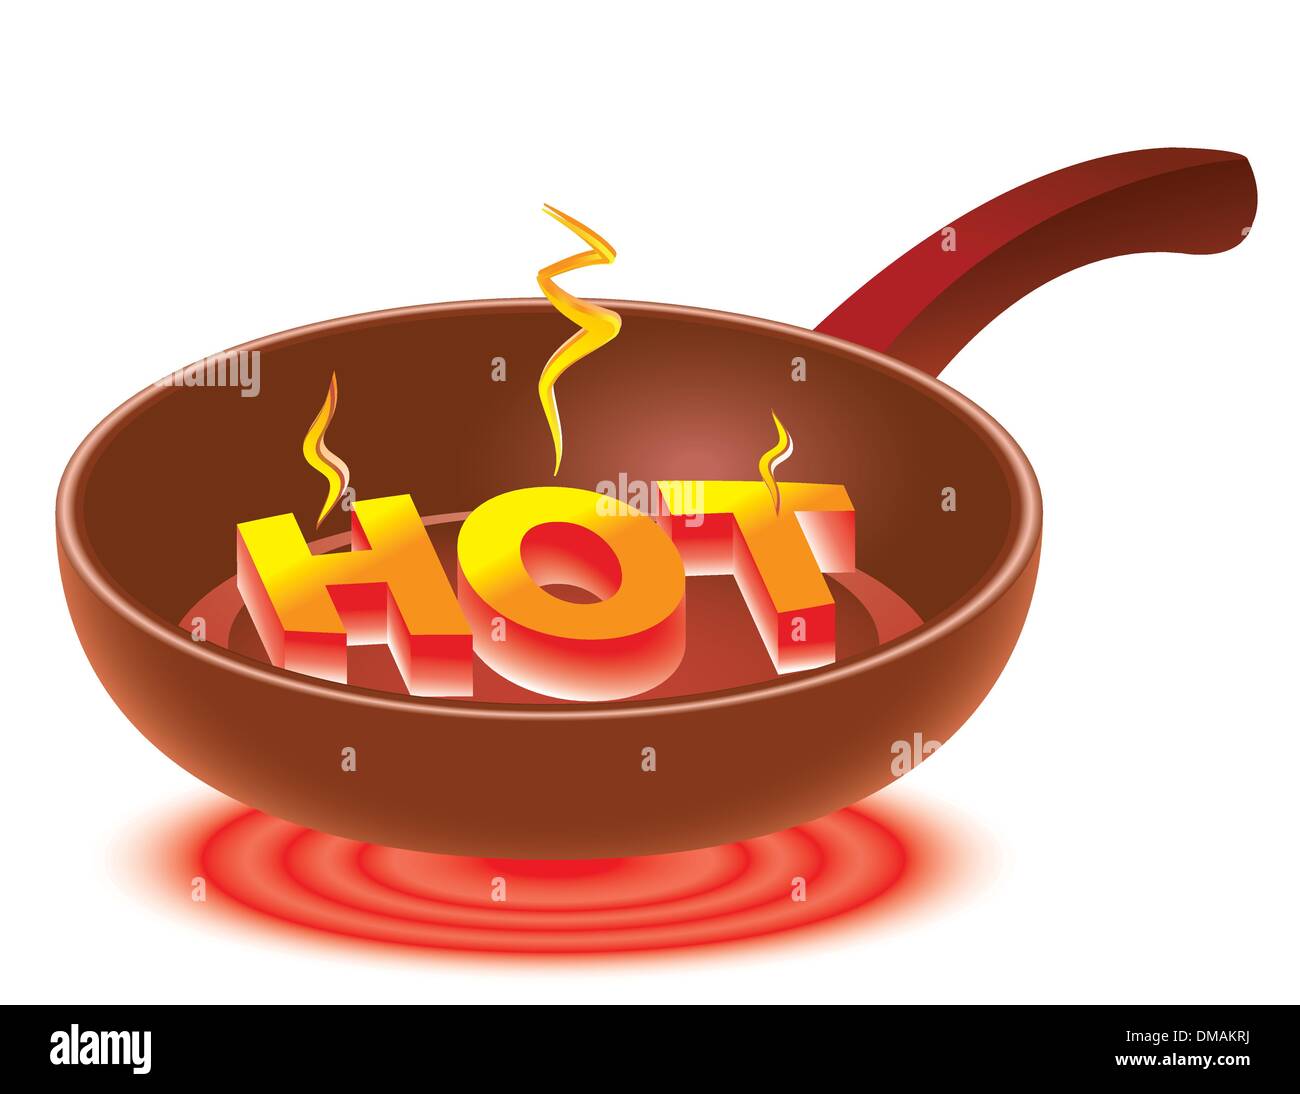 https://c8.alamy.com/comp/DMAKRJ/hot-on-red-hot-frying-pan-DMAKRJ.jpg